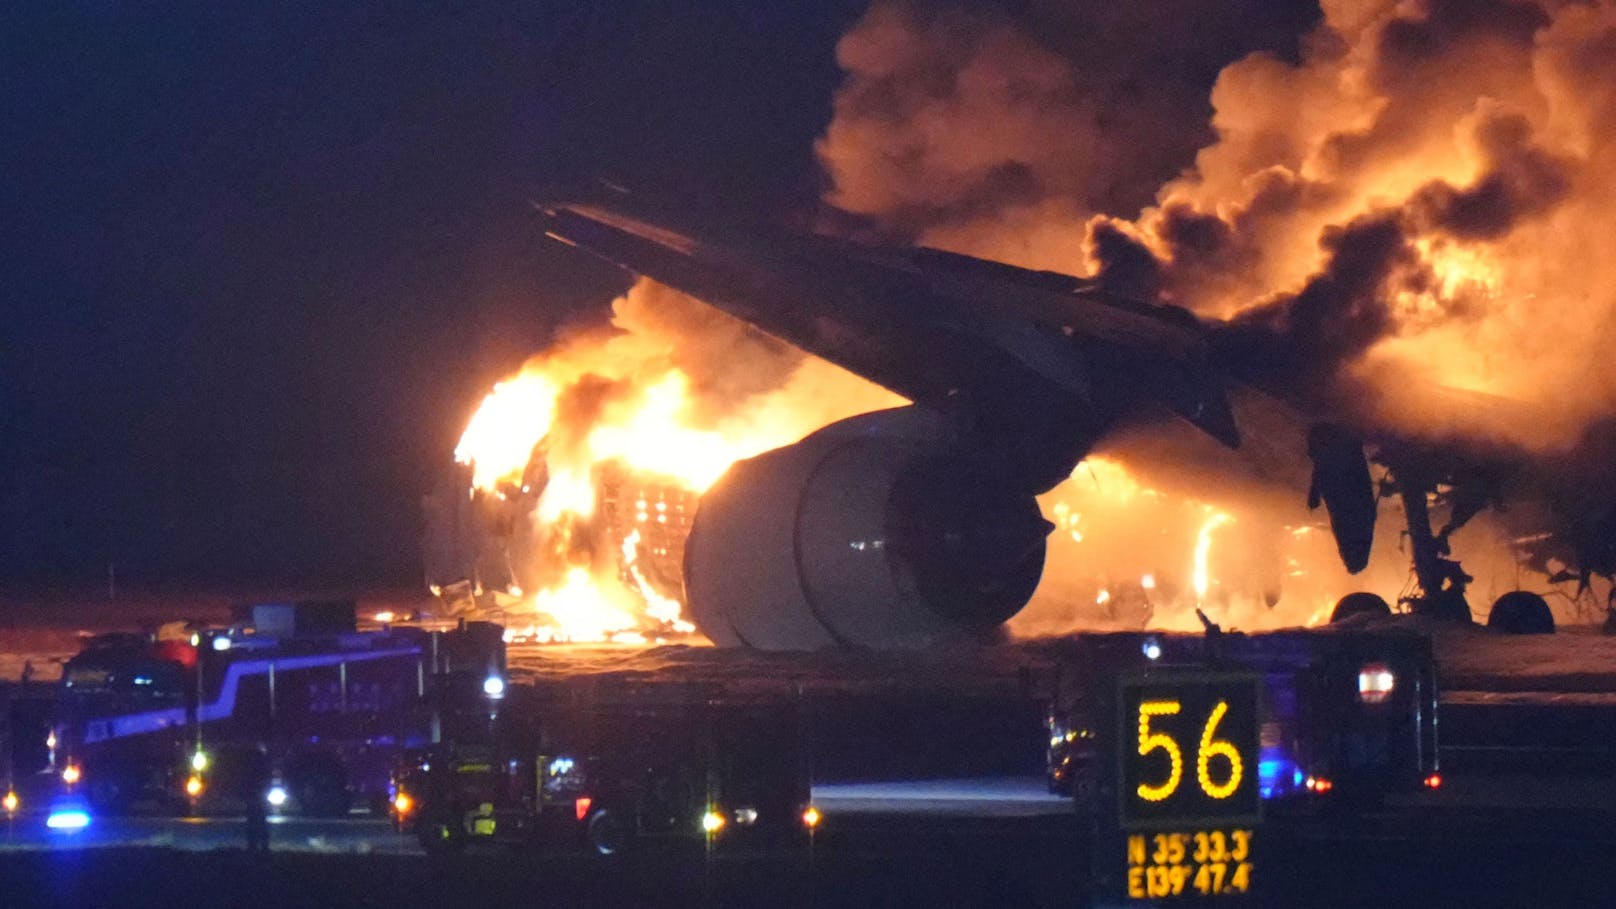 Feuer-Flugzeug bricht nach Crash an Airport auseinander